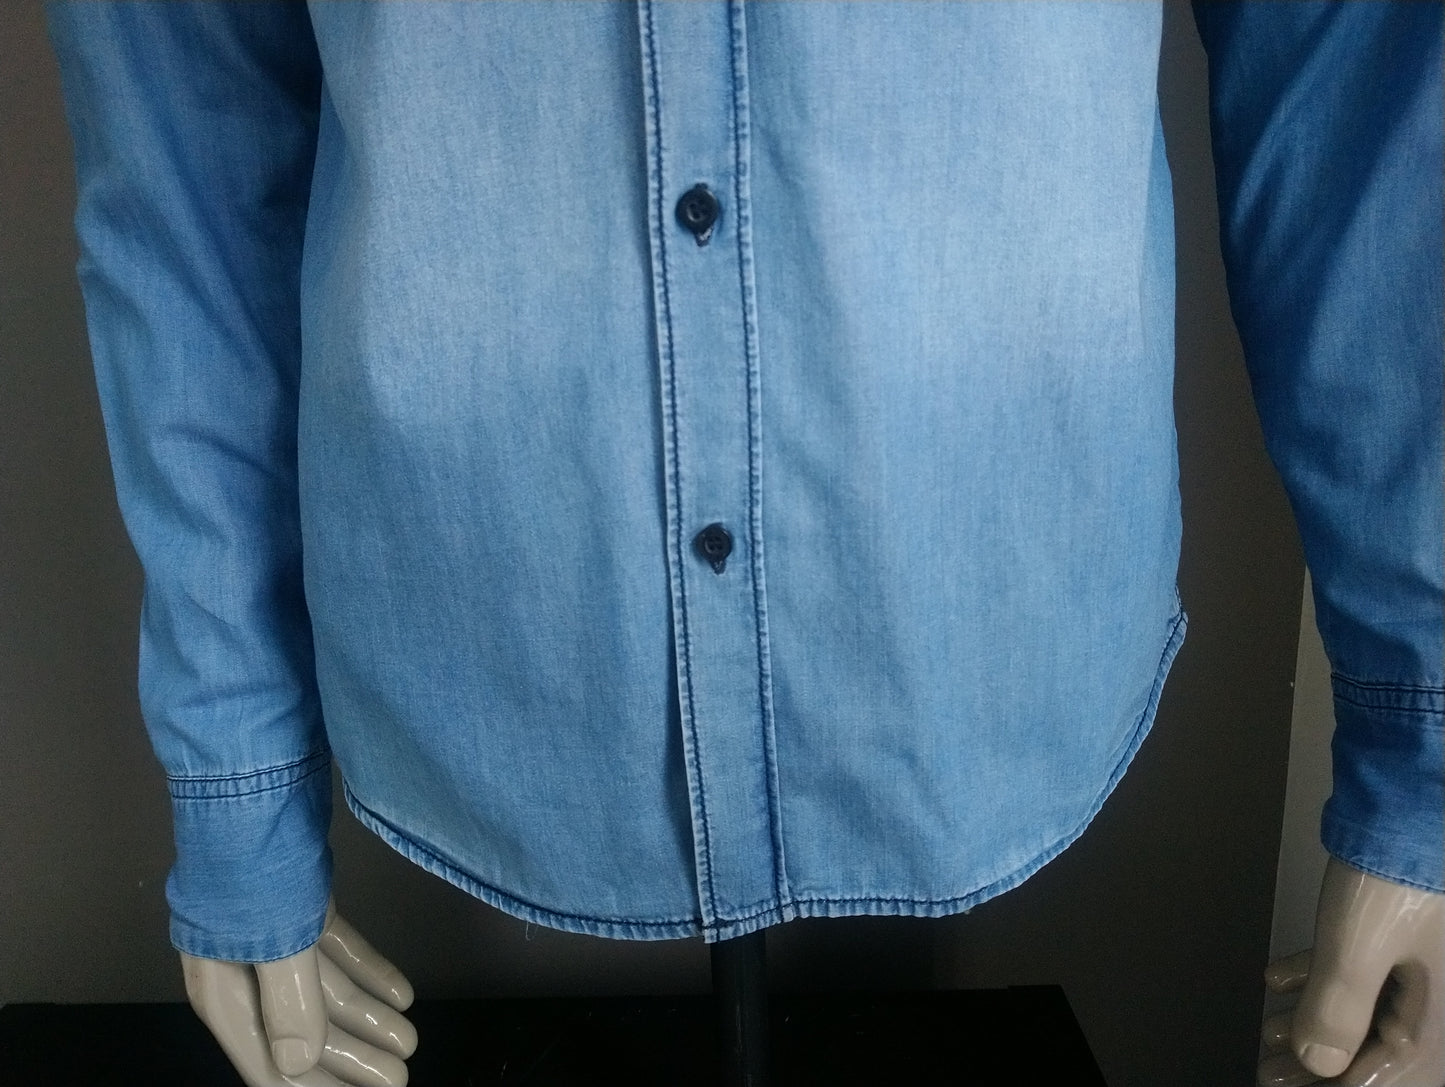 Coolcat -Hemd mit Kapuze. Blauer Jeansstoff. Größe L.